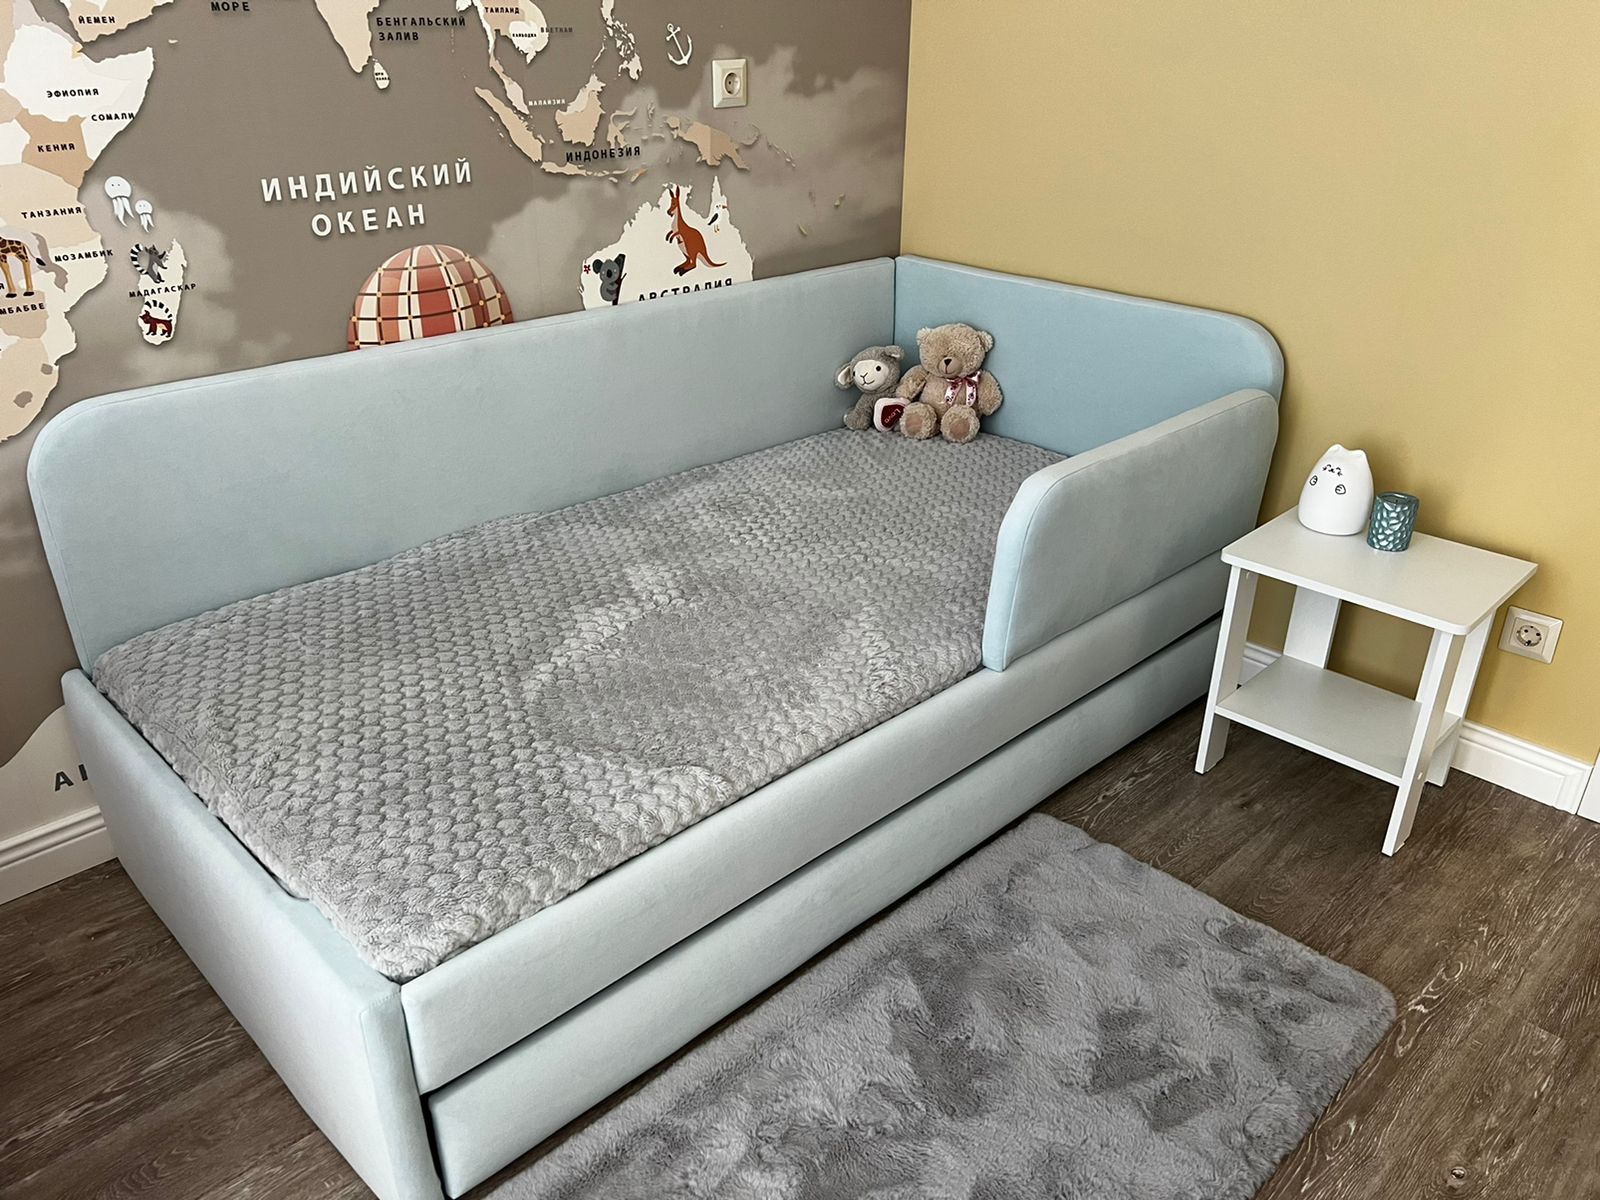 Купить детский диван-кровать в Москве недорого, цены и фото в каталоге | БэбиМаус